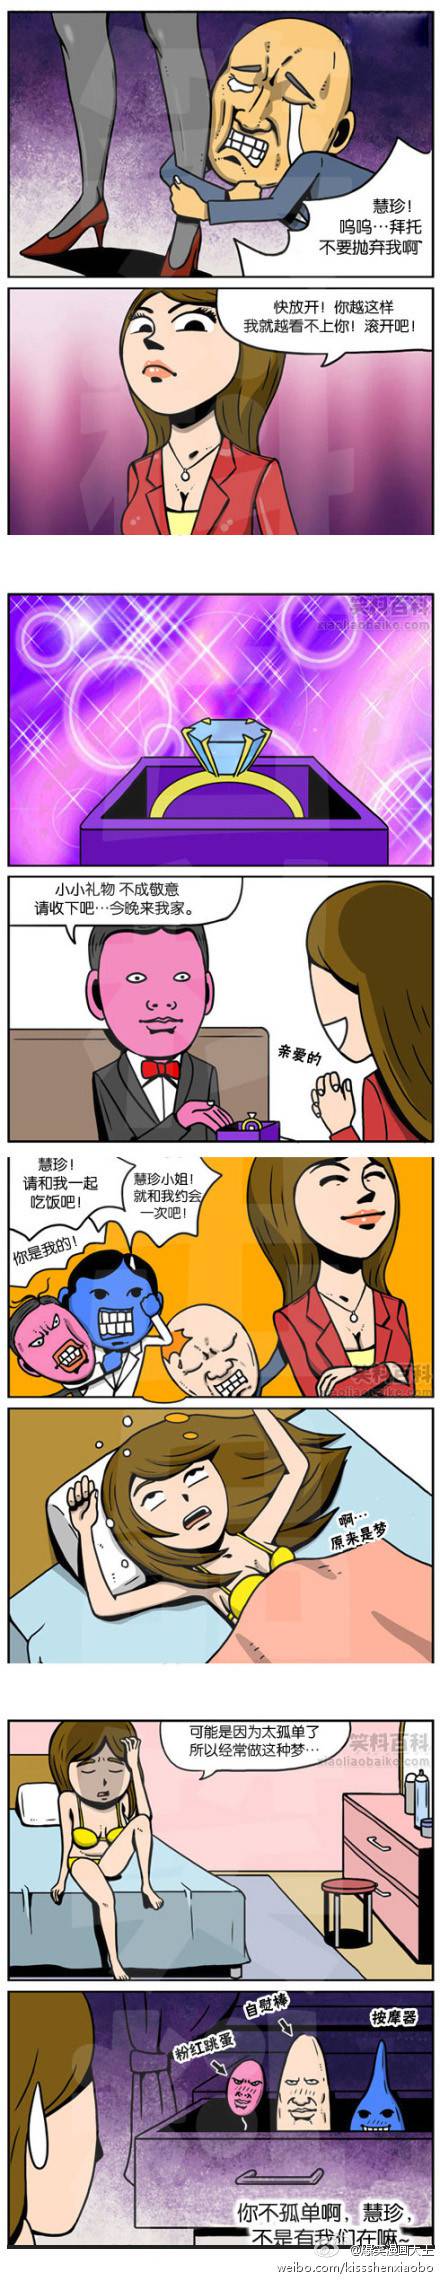 邪恶漫画爆笑囧图第39刊：情况